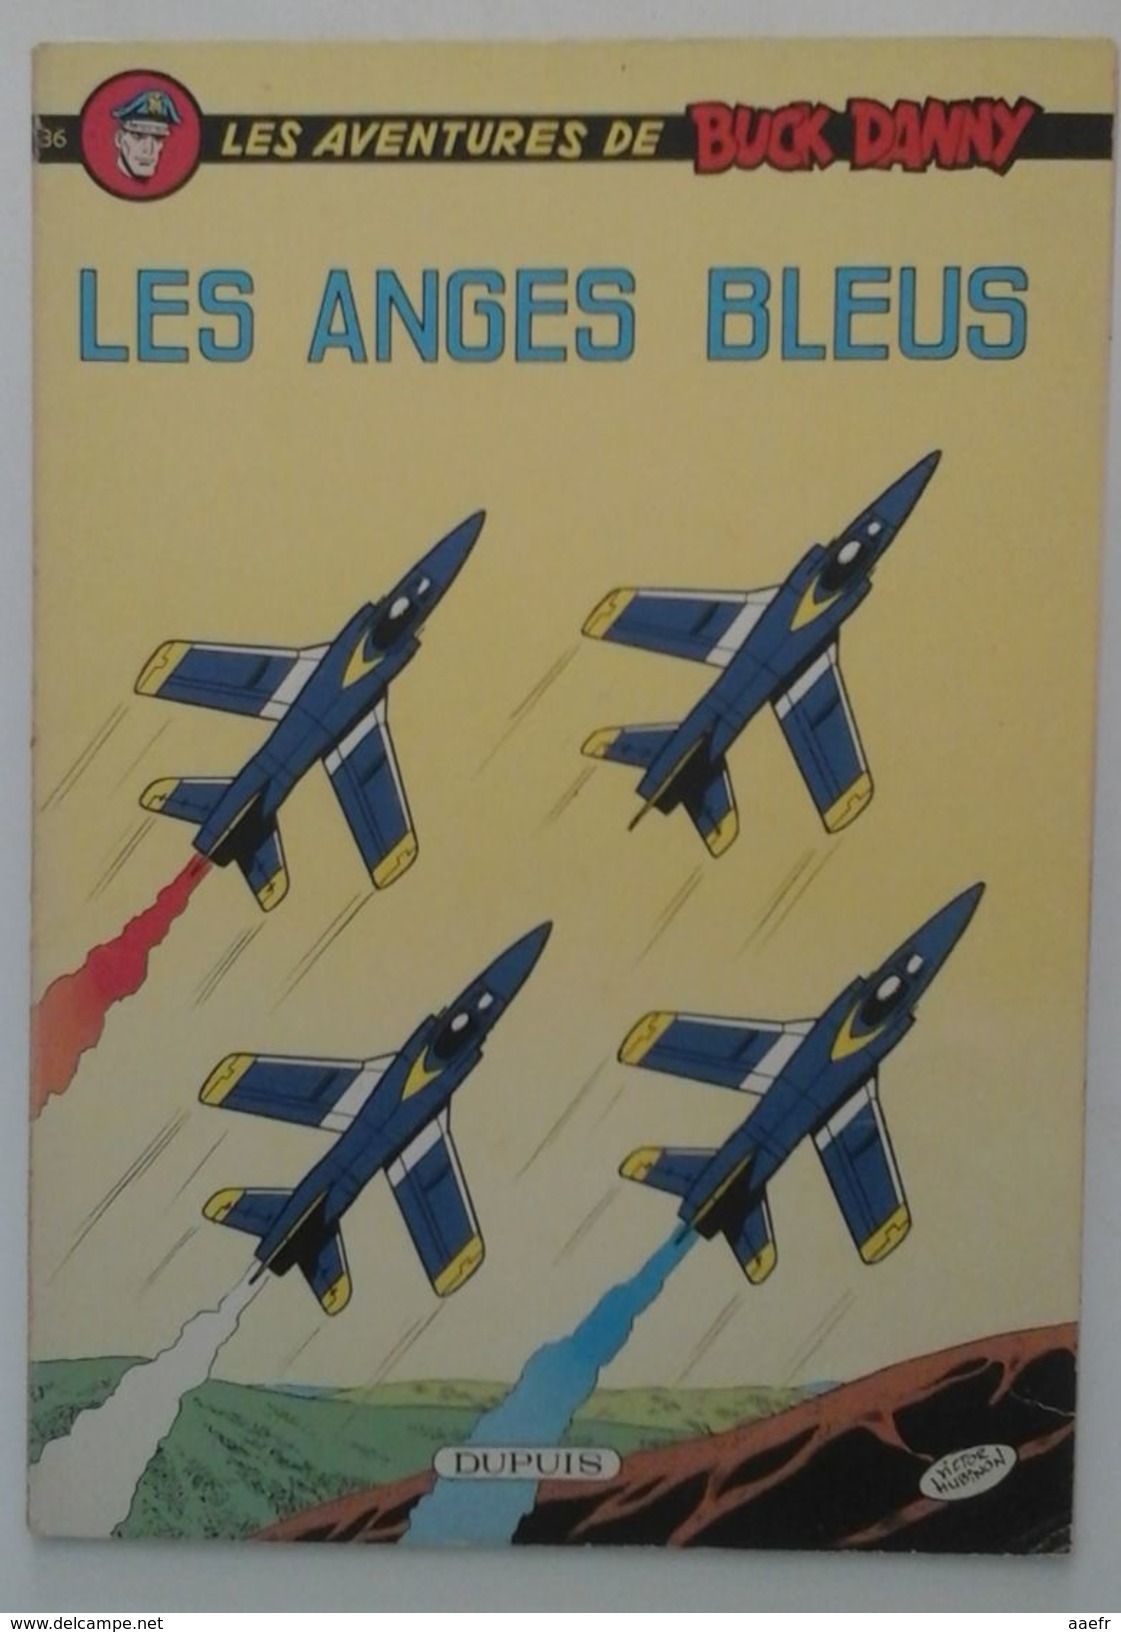 EO Buck Dany N°36 - Les Anges Bleus - Charlier & Hubinon - Dupuis 1970 - Réf. 36 E.O. - Buck Danny